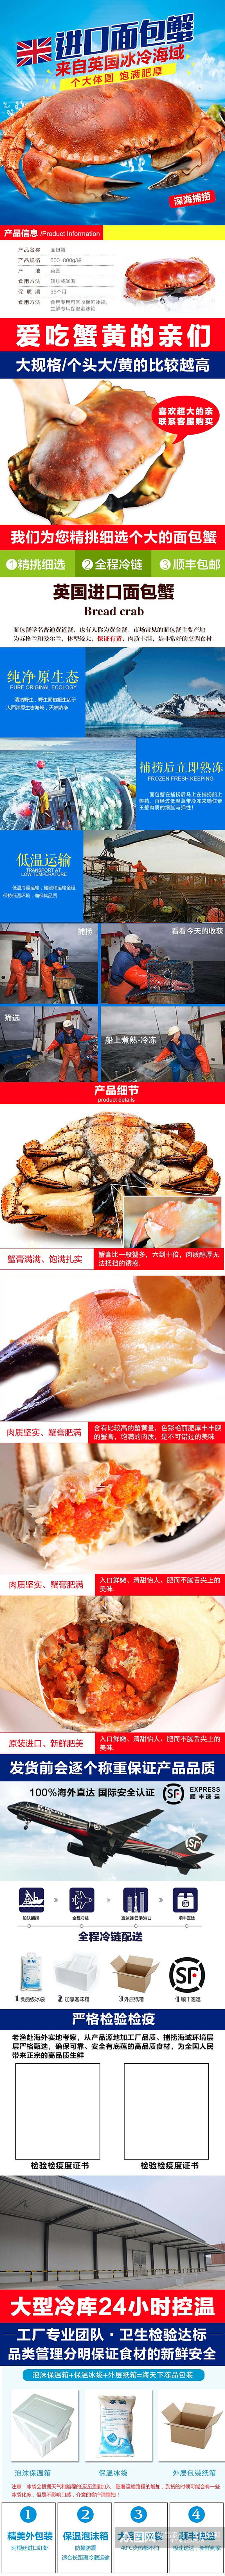 健康面包蟹生鲜海鲜电商详情页素材